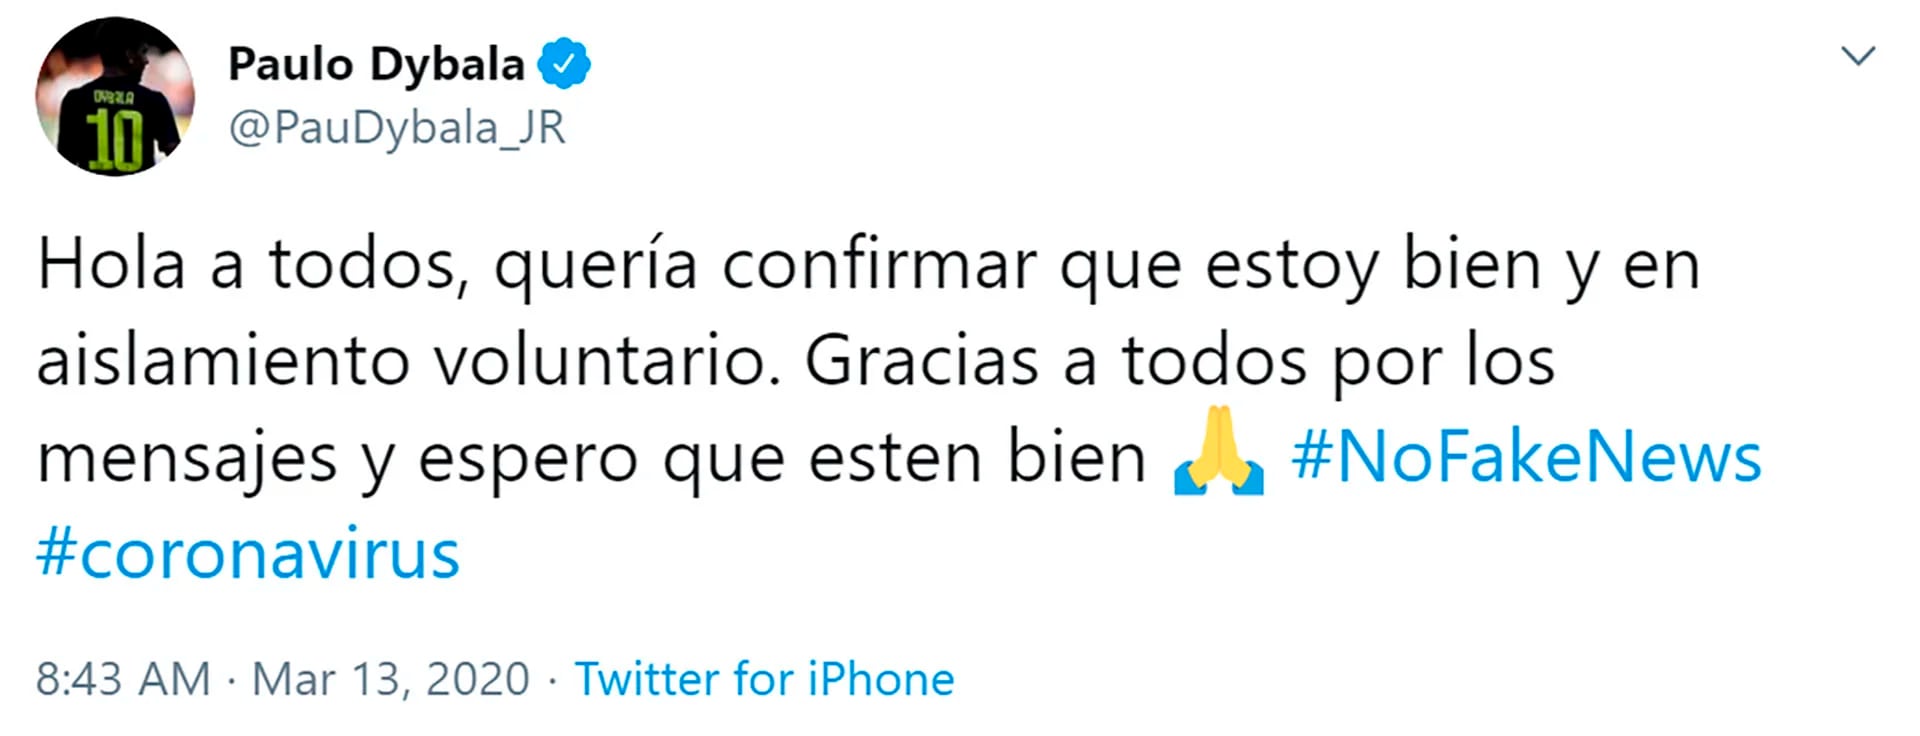 El tuit de Paulo Dybala